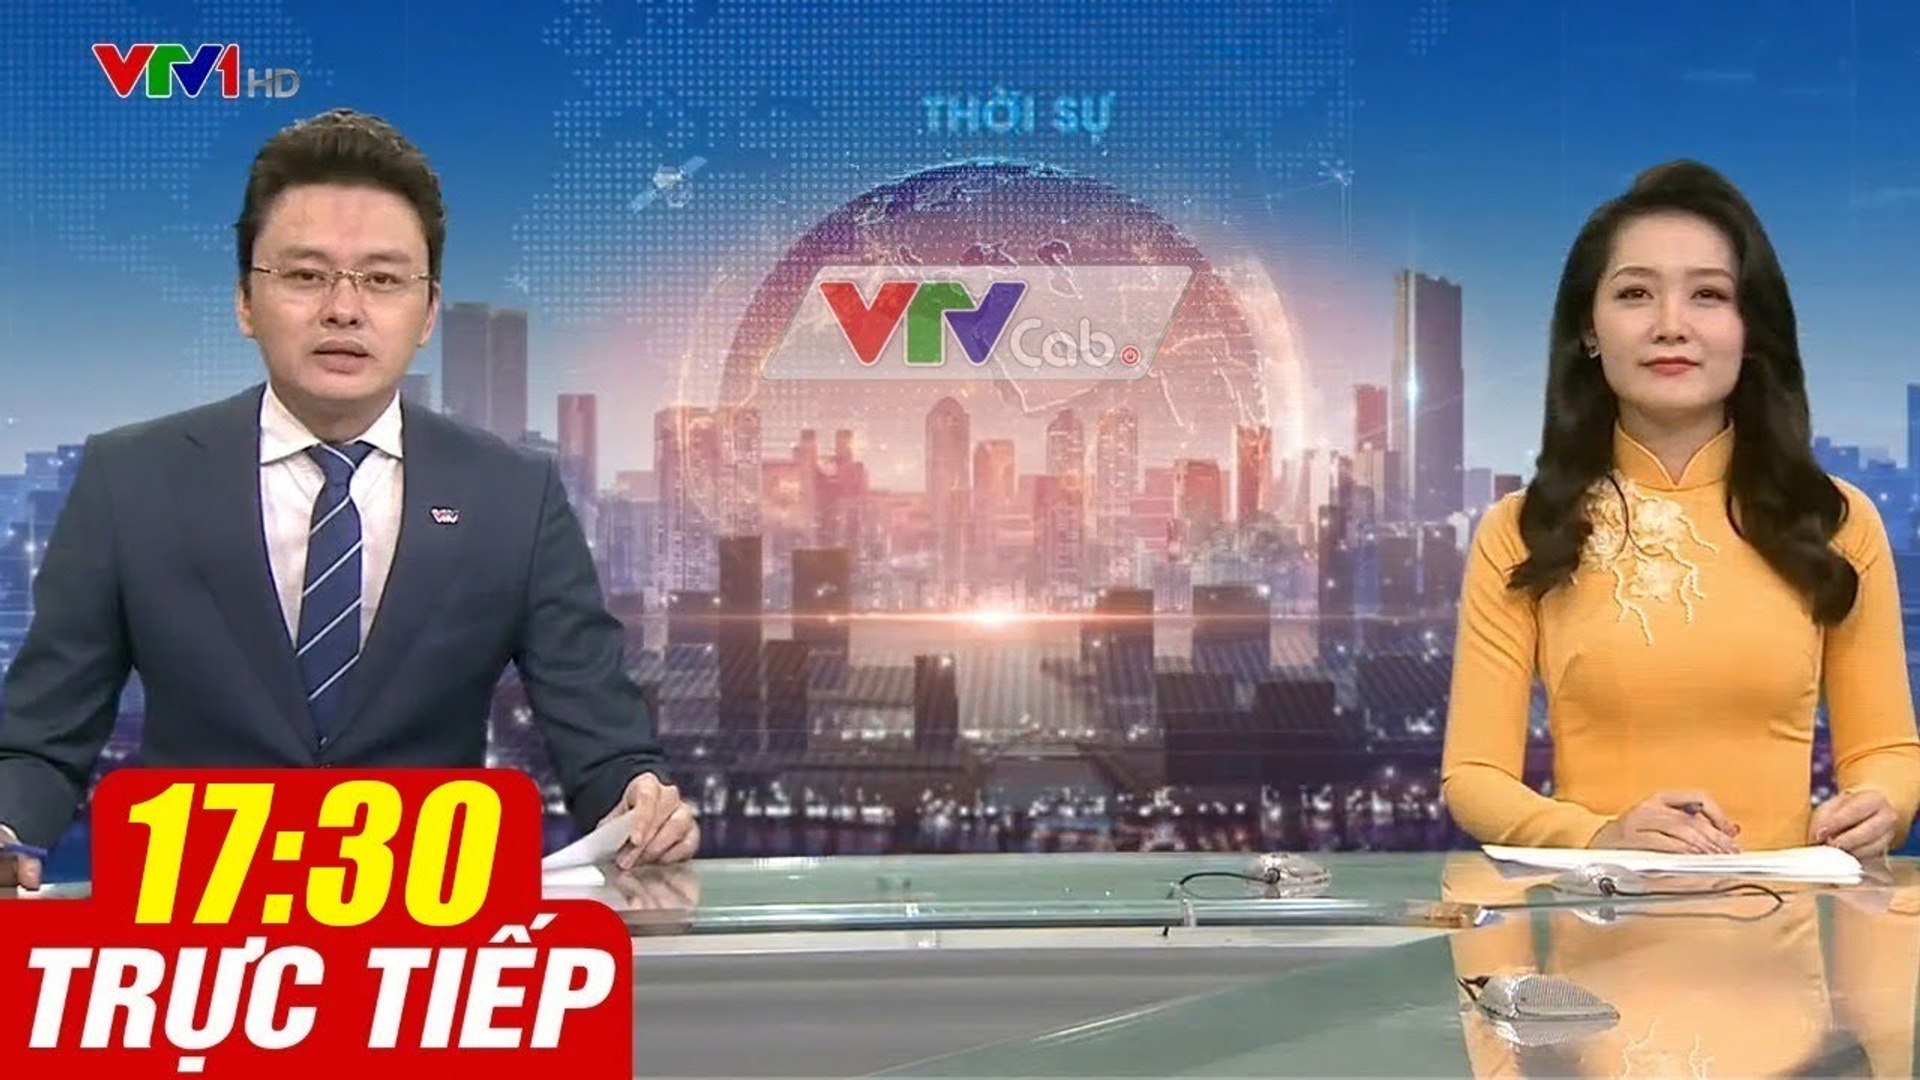 Trực Tiếp VIỆT NAM HÔM NAY 17h30 ngày 7.08.2020  Tin tức thời sự VTV1 mới nhất hôm nay